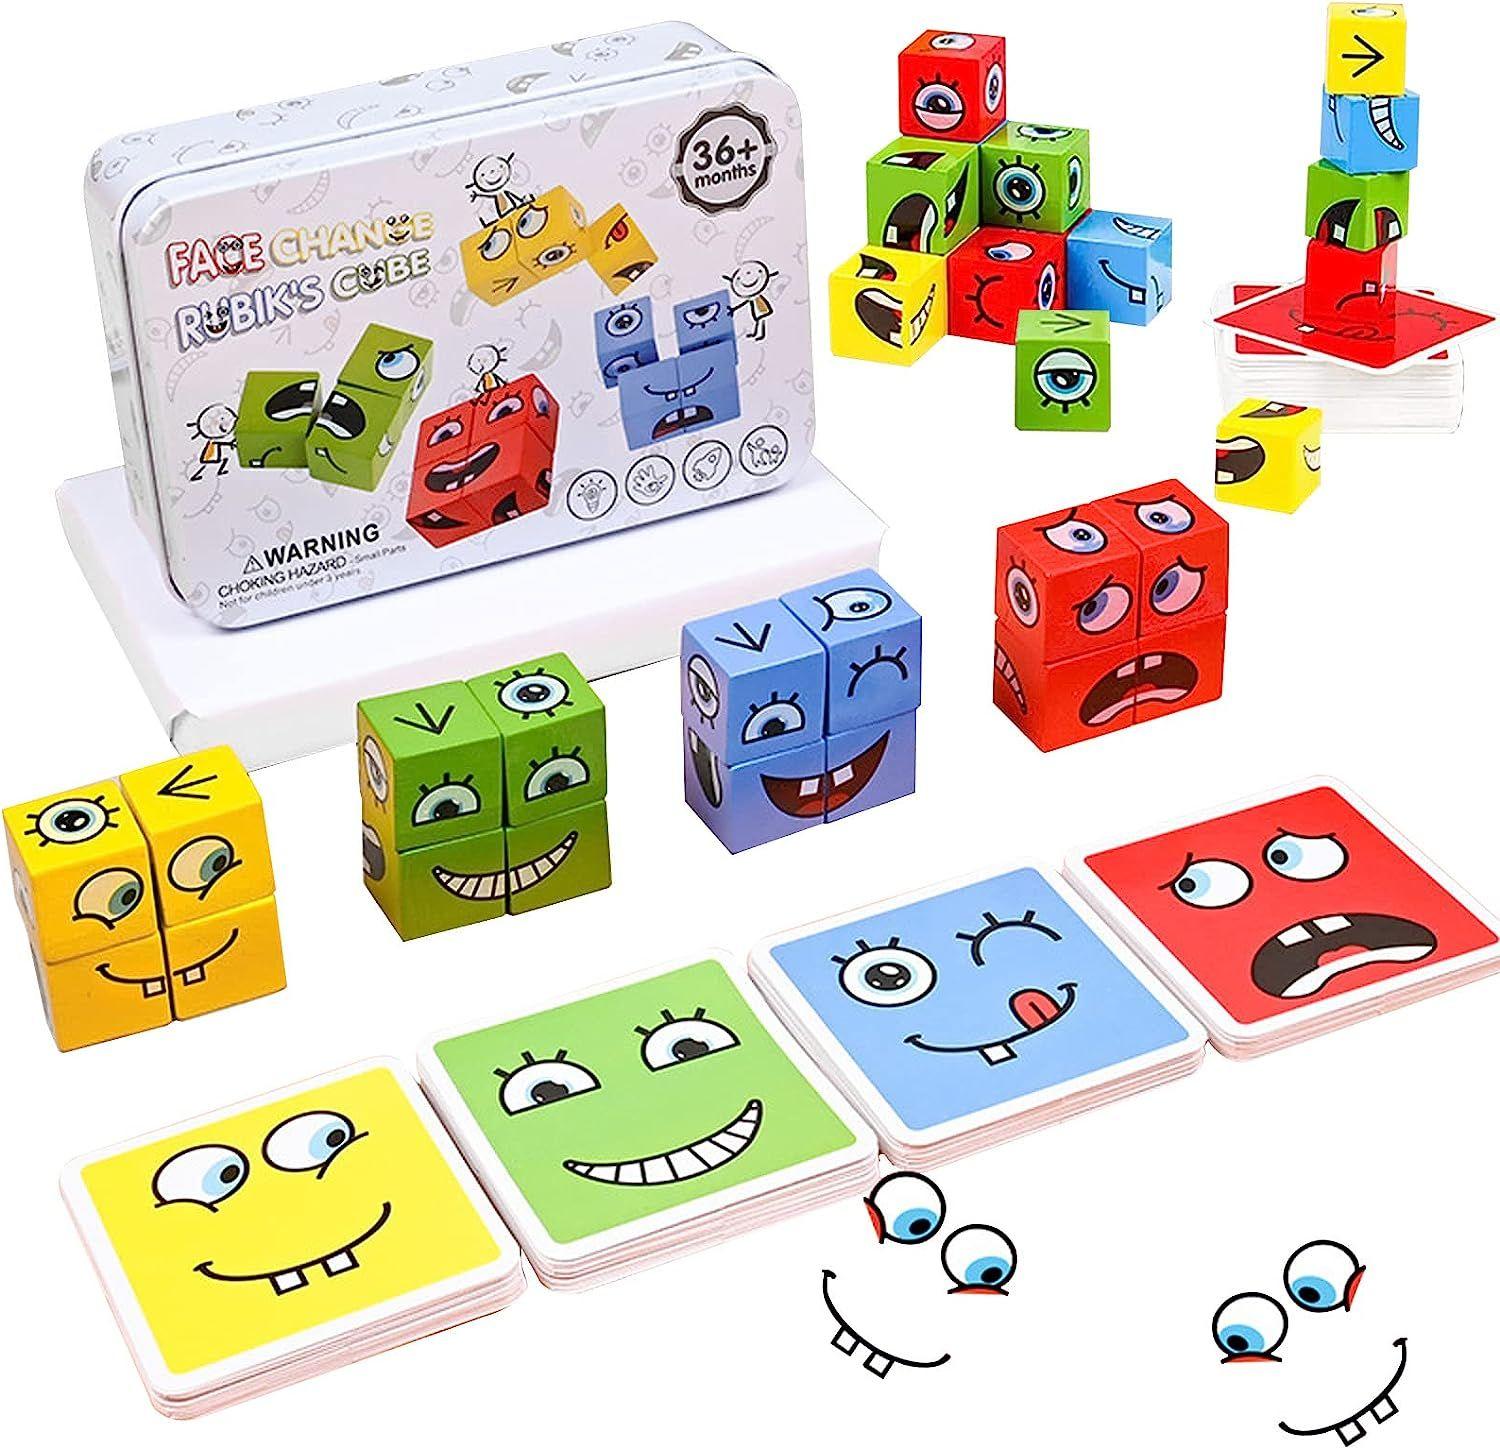 visage changement rubiks cube jeu correspondant bloc puzzles jeu puzzles  cubes de construction jouet avec cloche Uniquement 20,49 € PatPat FR Mobile